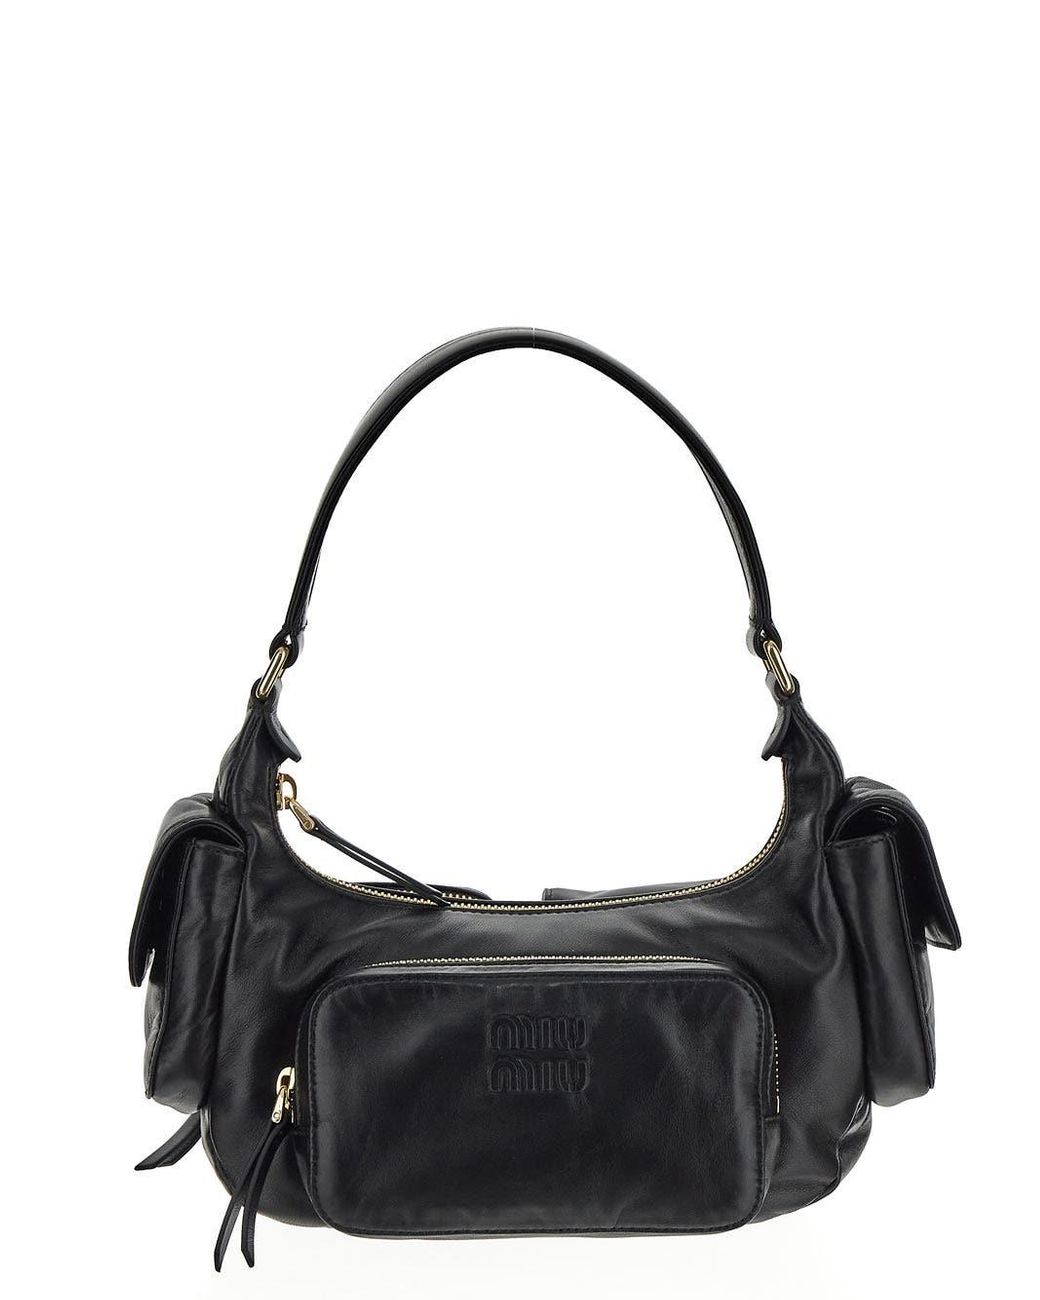 Miu Miu Nappa Leather Pocket Bag in Black | Lyst